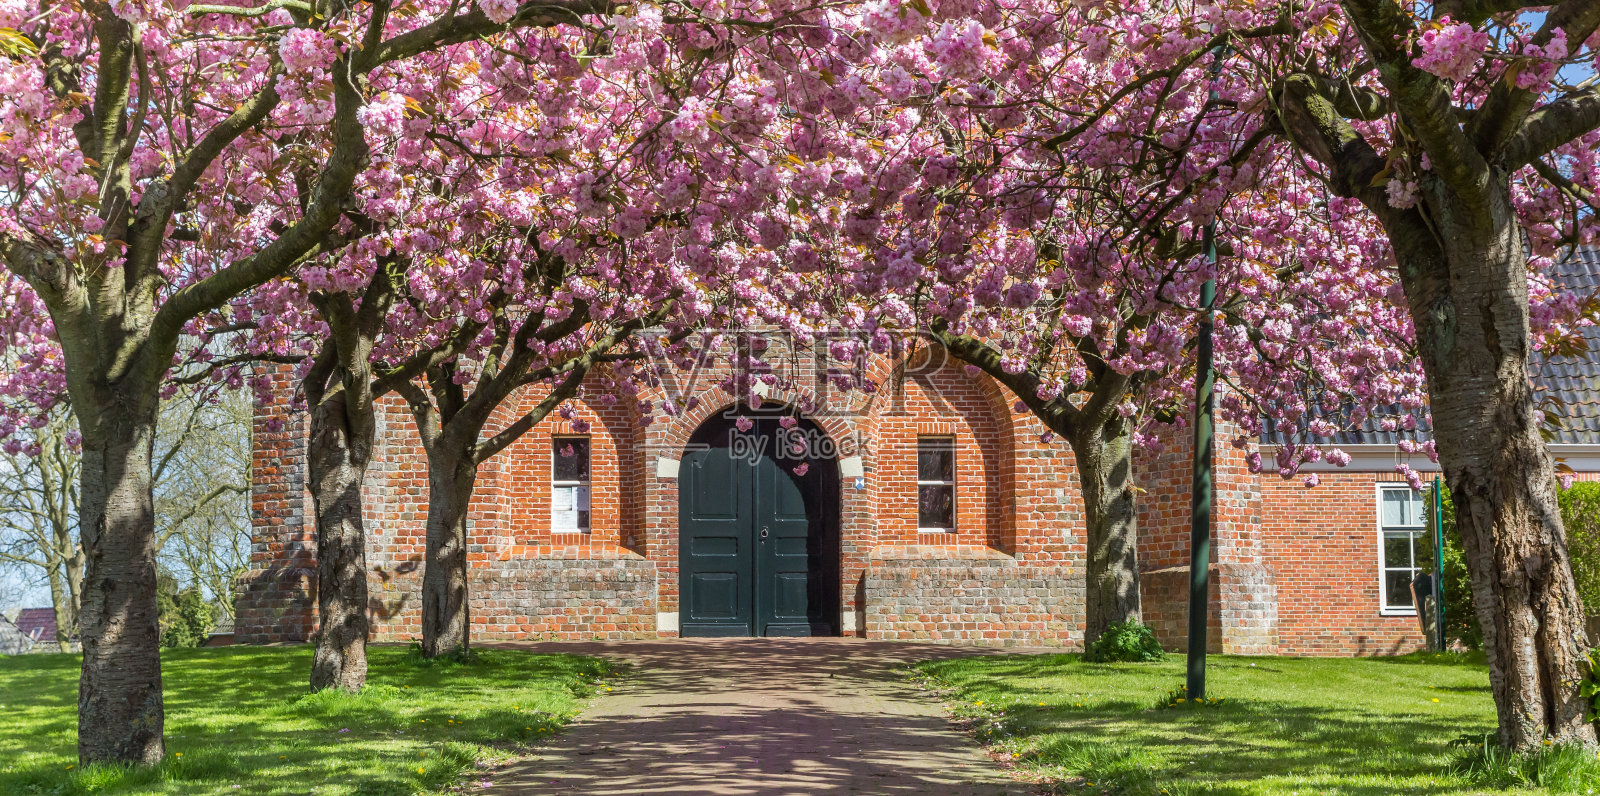 荷兰Ten Boer老教堂前的樱花全景图照片摄影图片